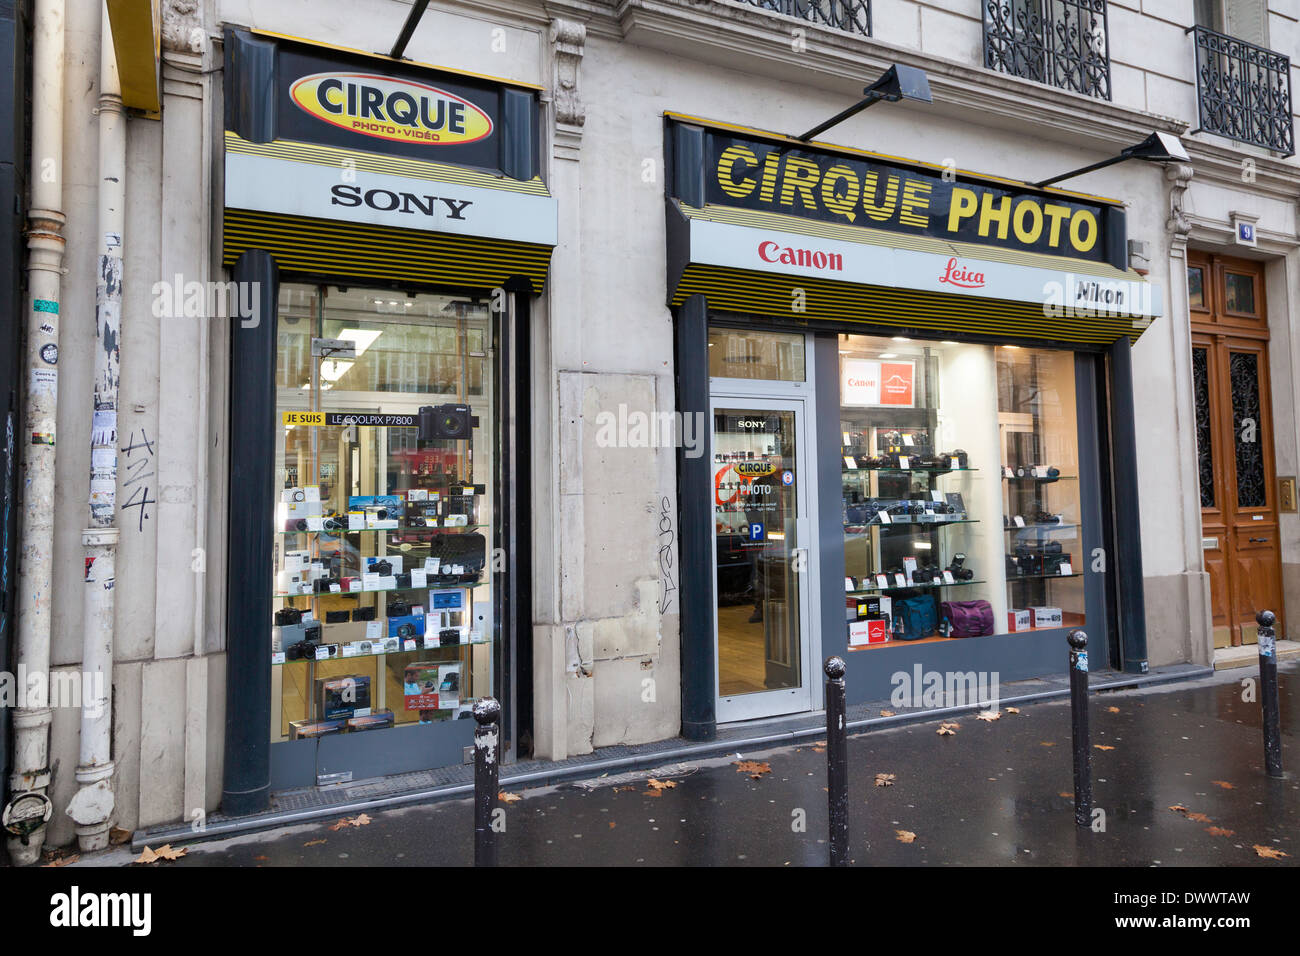 Cirque Photo camera store, Boulevard Beaumarchais, Paris, France Stock  Photo - Alamy